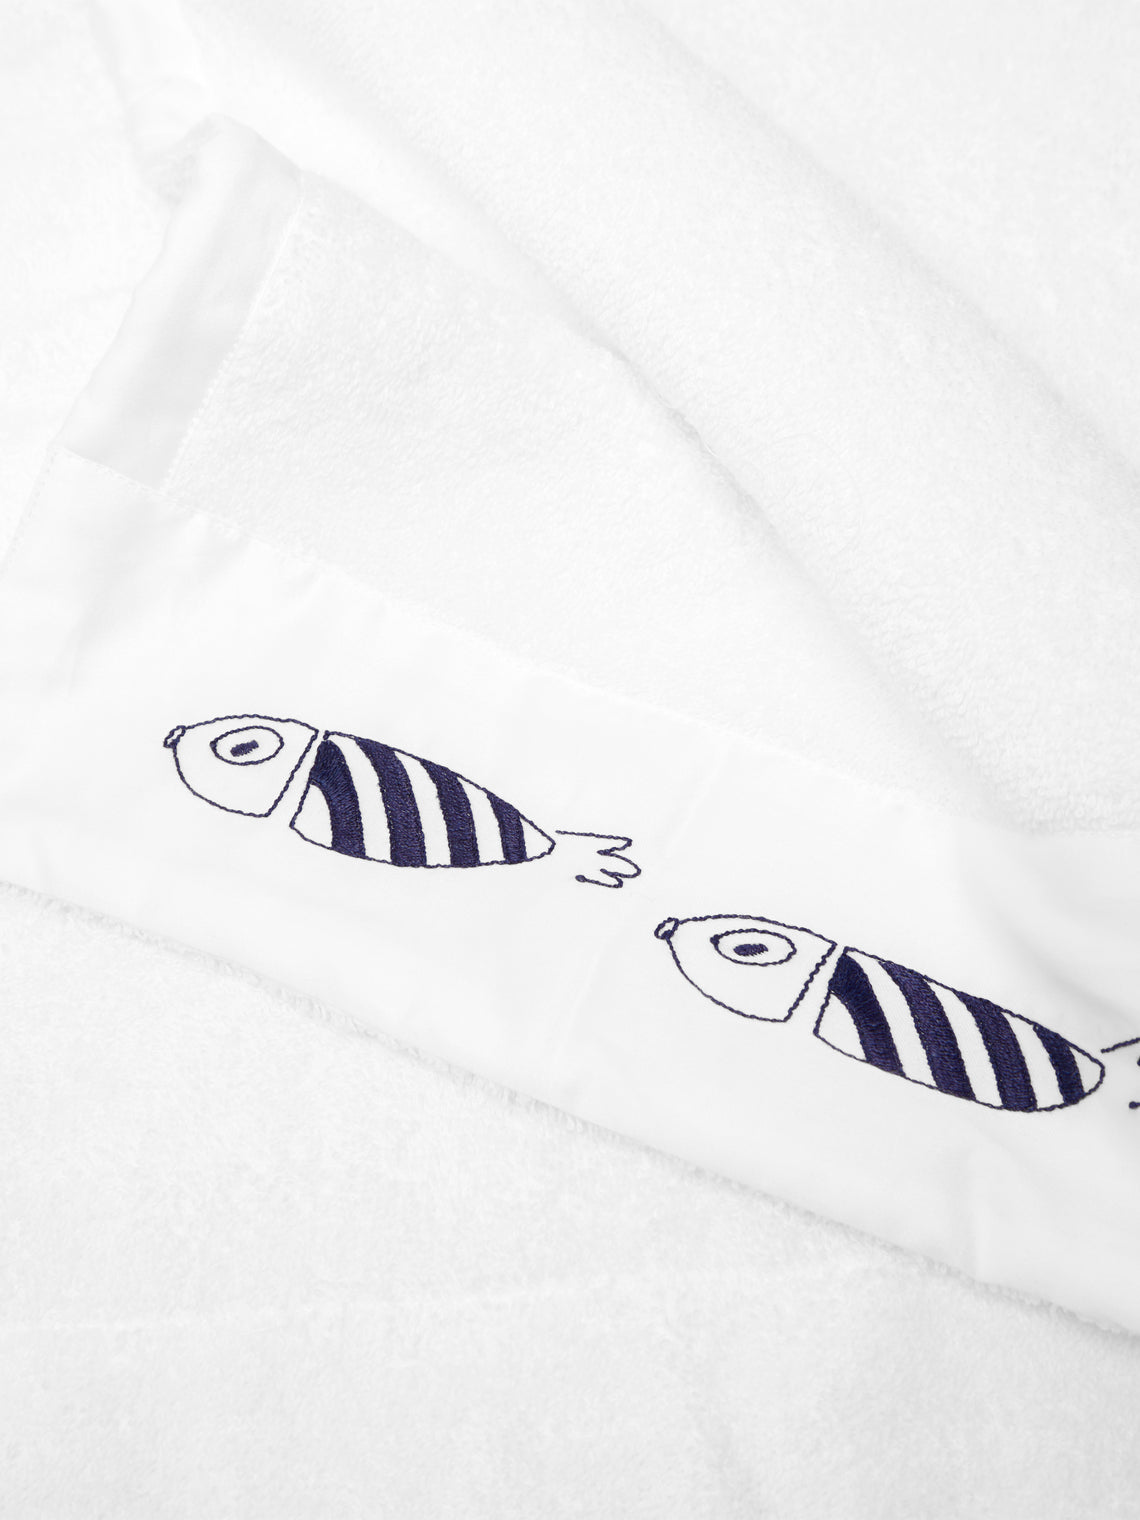 Loretta Caponi - Striped Fish Hand-Embroidered Cotton Bath Towel -  - ABASK